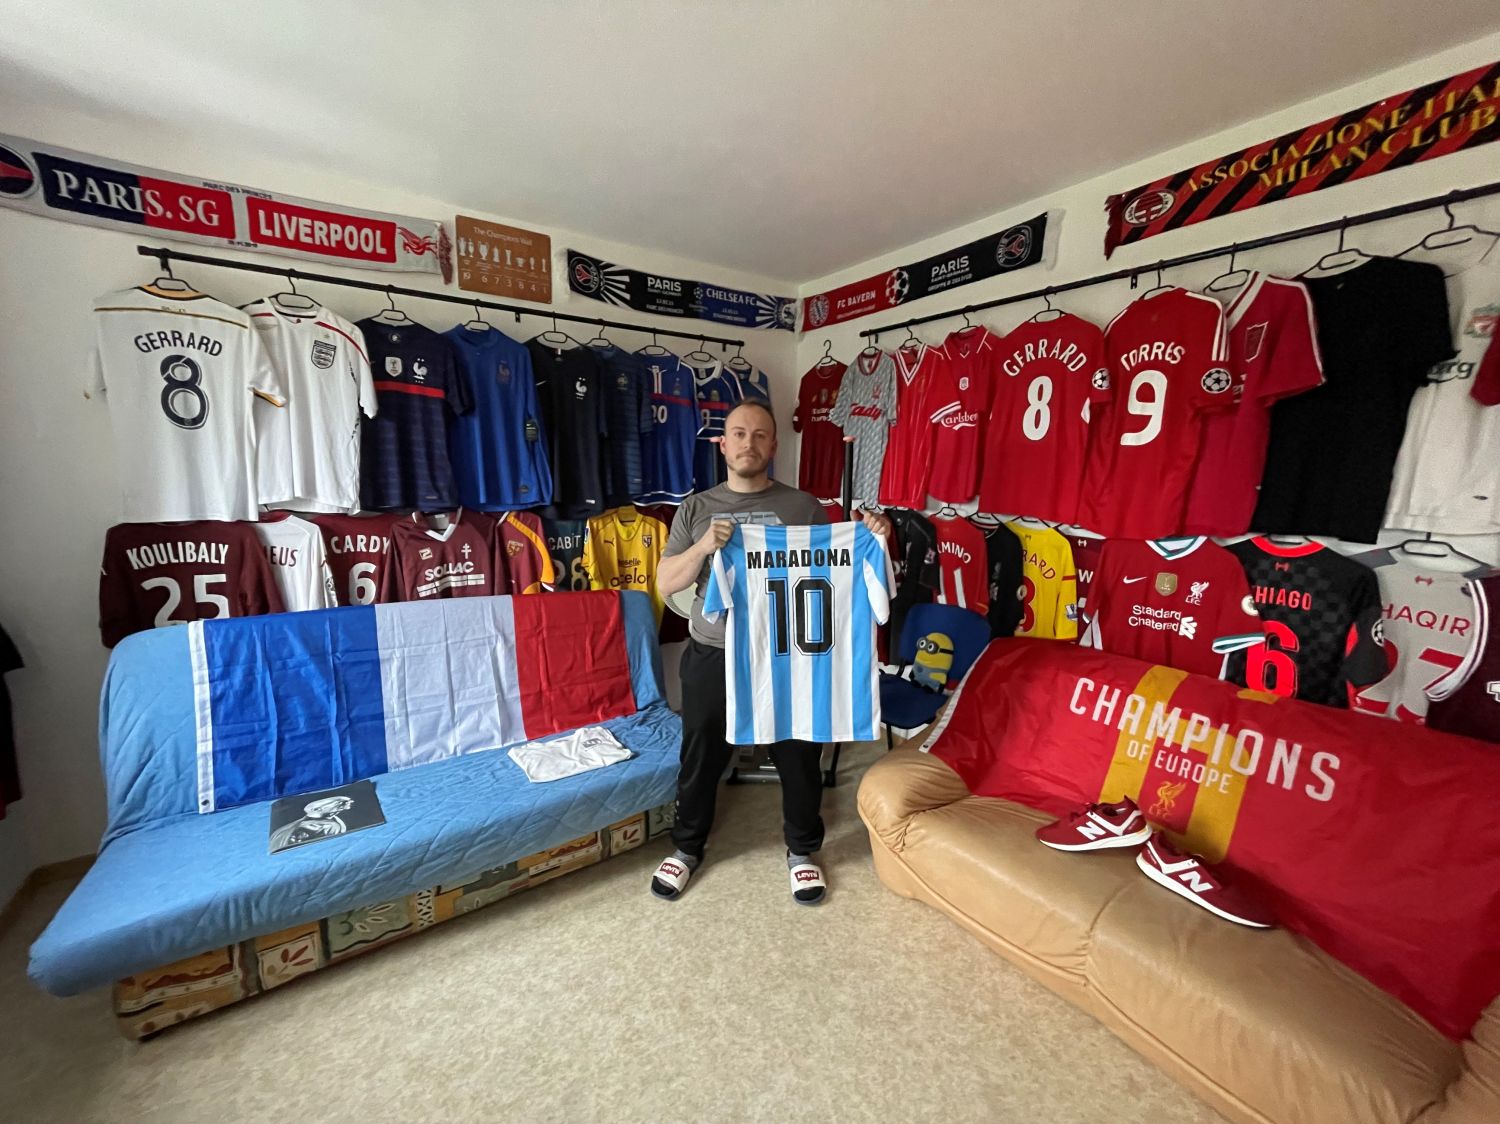 Il transforme une pièce de son appartement en musée pour ses maillots de foot